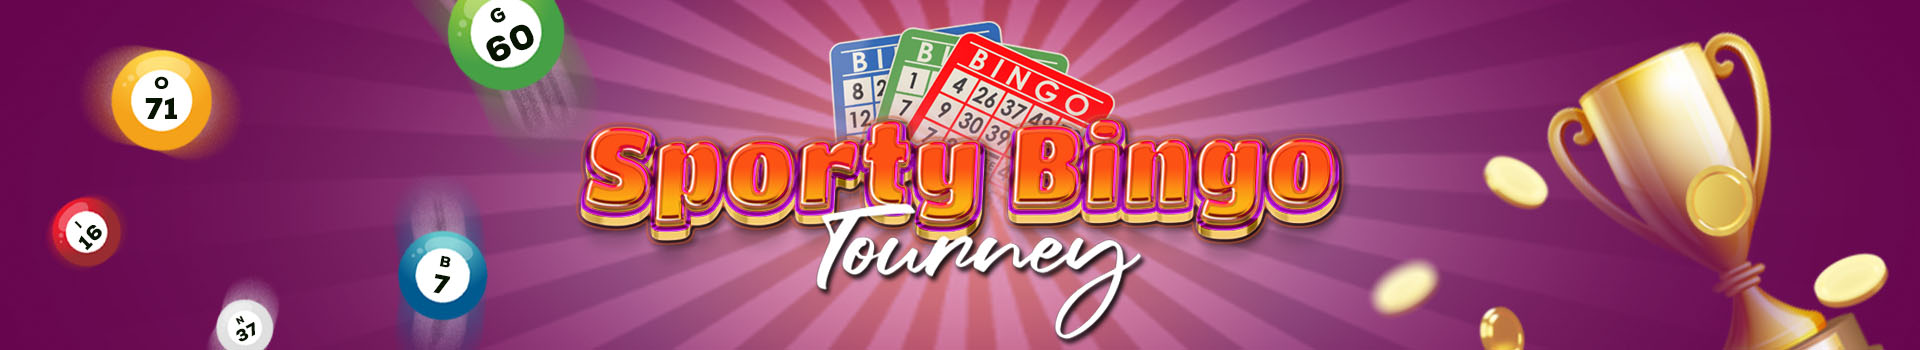 Sporty bingo Tourney Banner